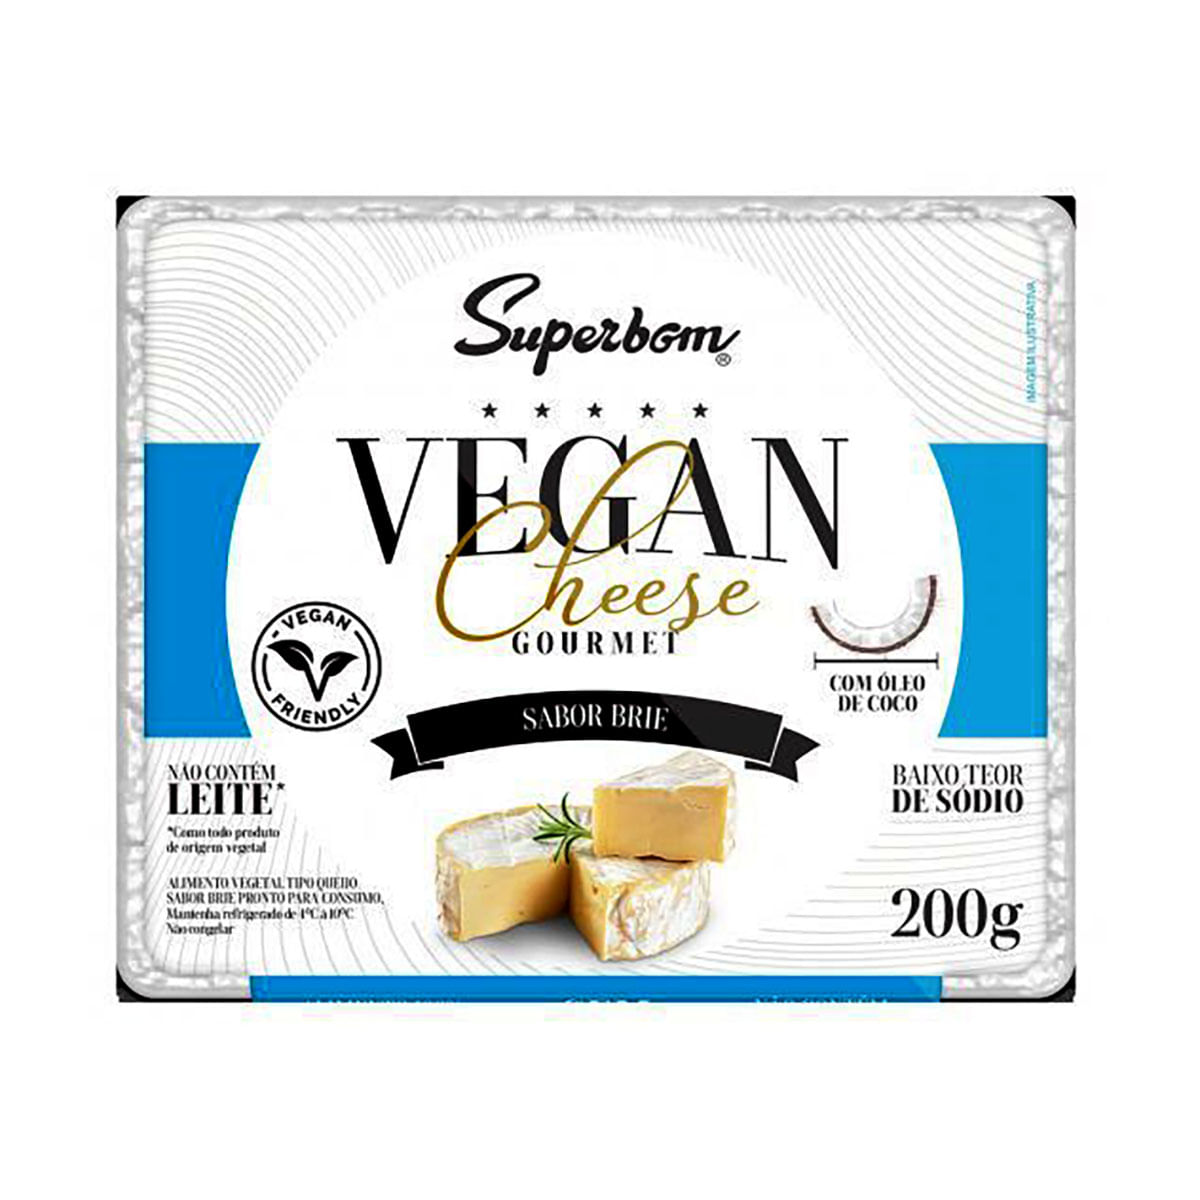 queijo-vegano-vegan-cheese-gourmet-sabor-brie-superbom-200-g-1.jpg